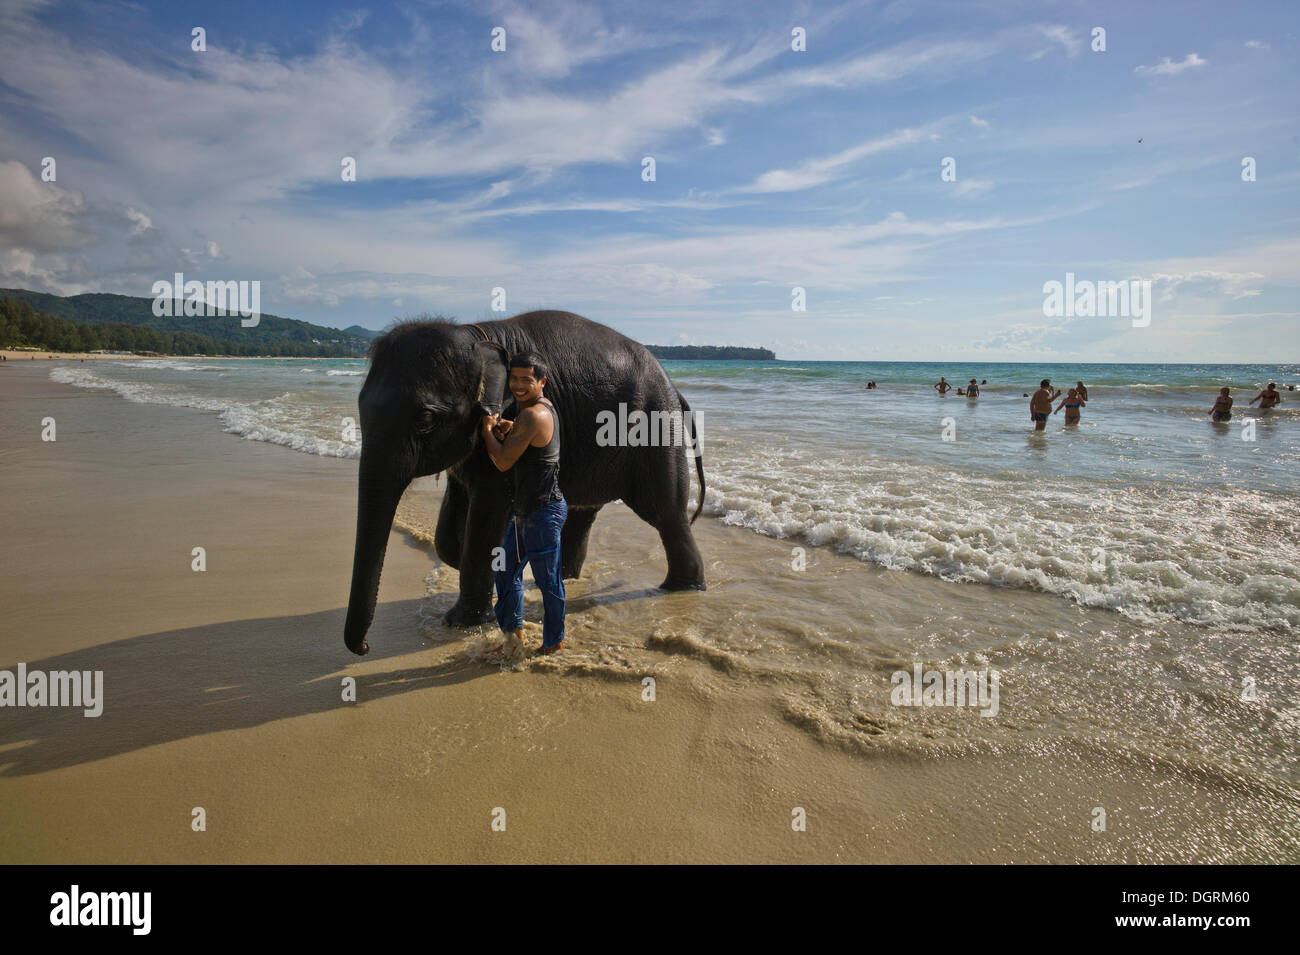 Les éléphant d'Asie (Elephas maximus) sur une plage comme une attraction touristique, Phuket, Thaïlande, Asie, PublicGround Banque D'Images